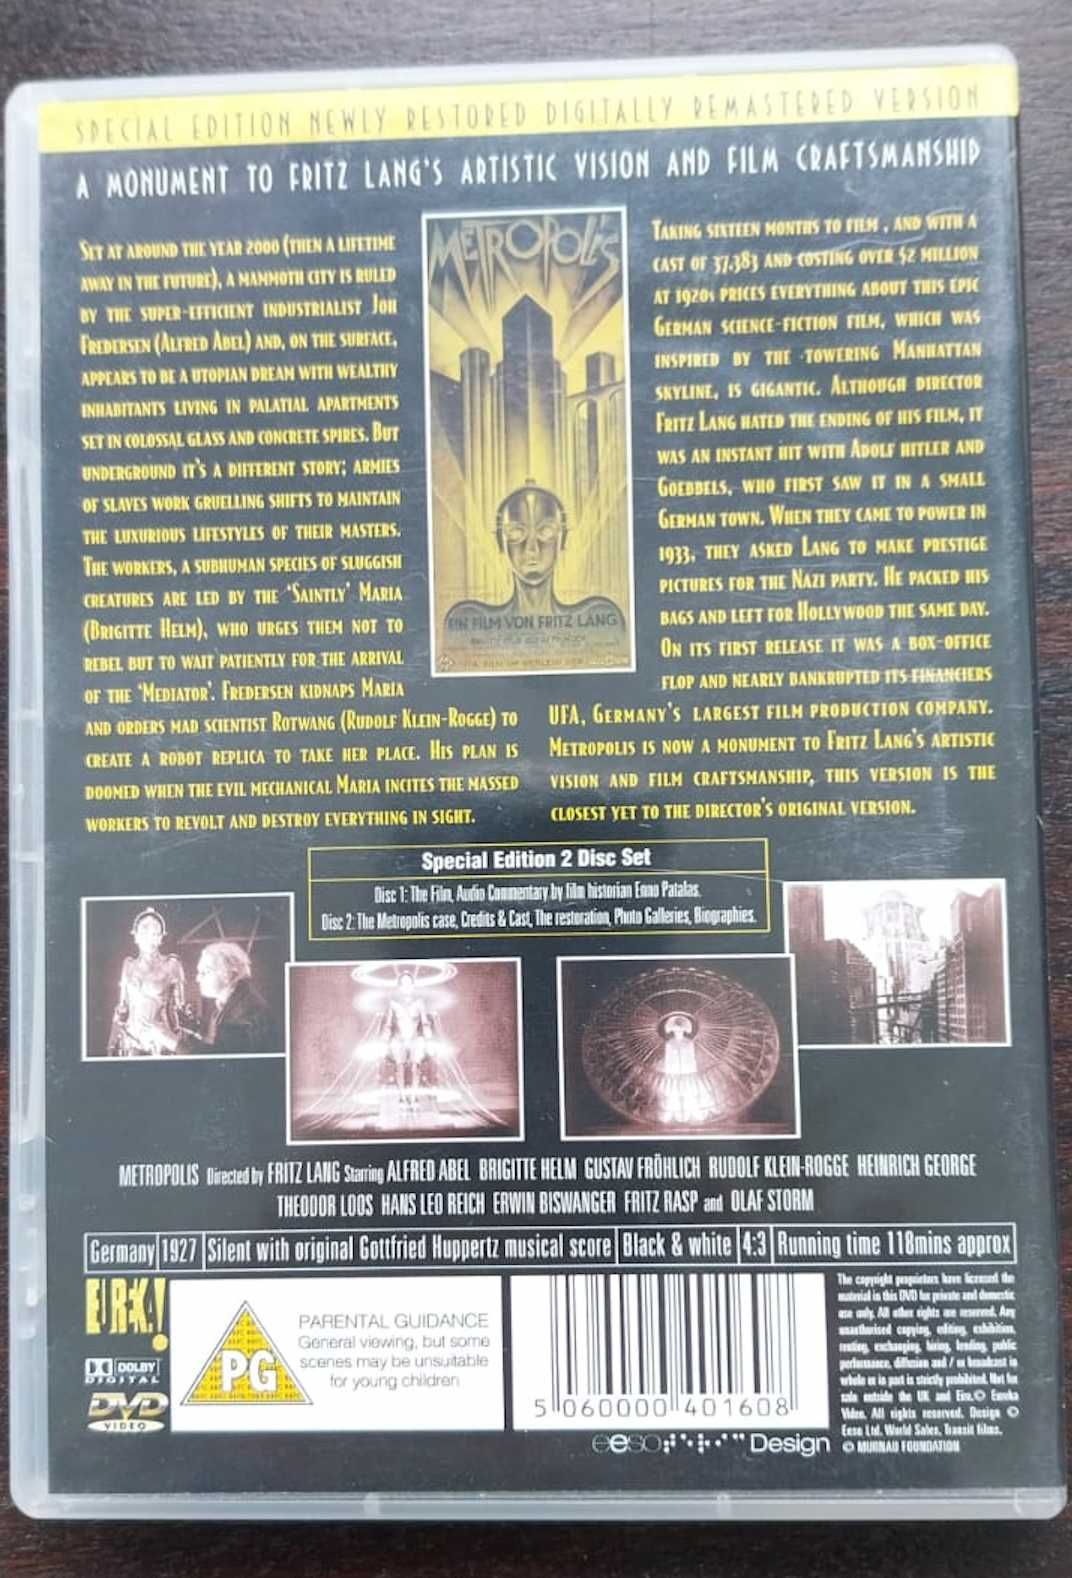 DVD "Metropolis", de Fritz Lang. Raro.